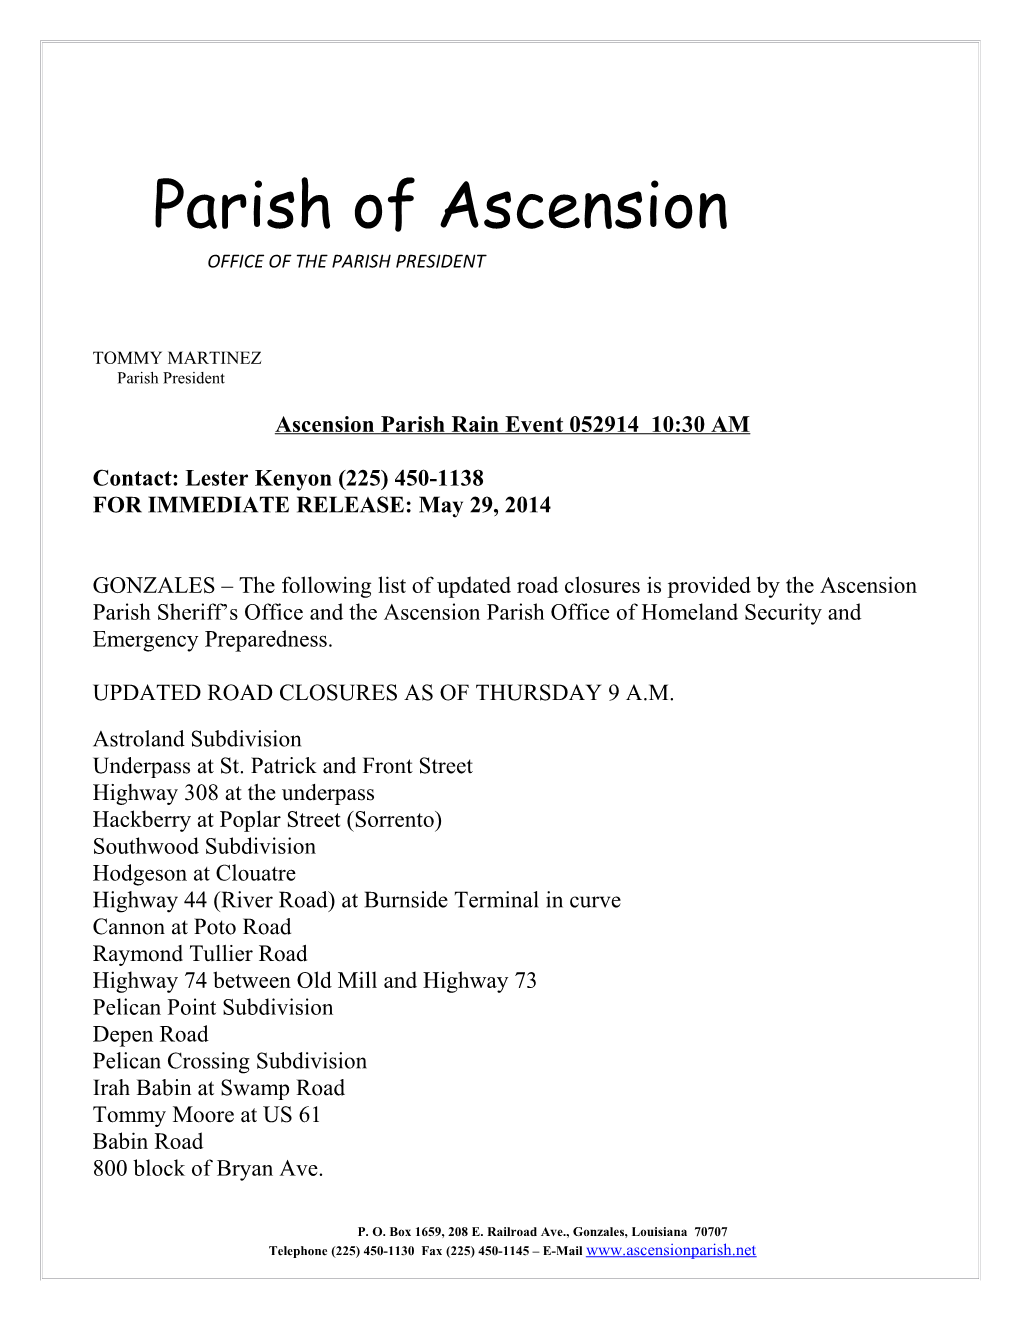 Ascension Parish Rain Event 052914 10:30AM